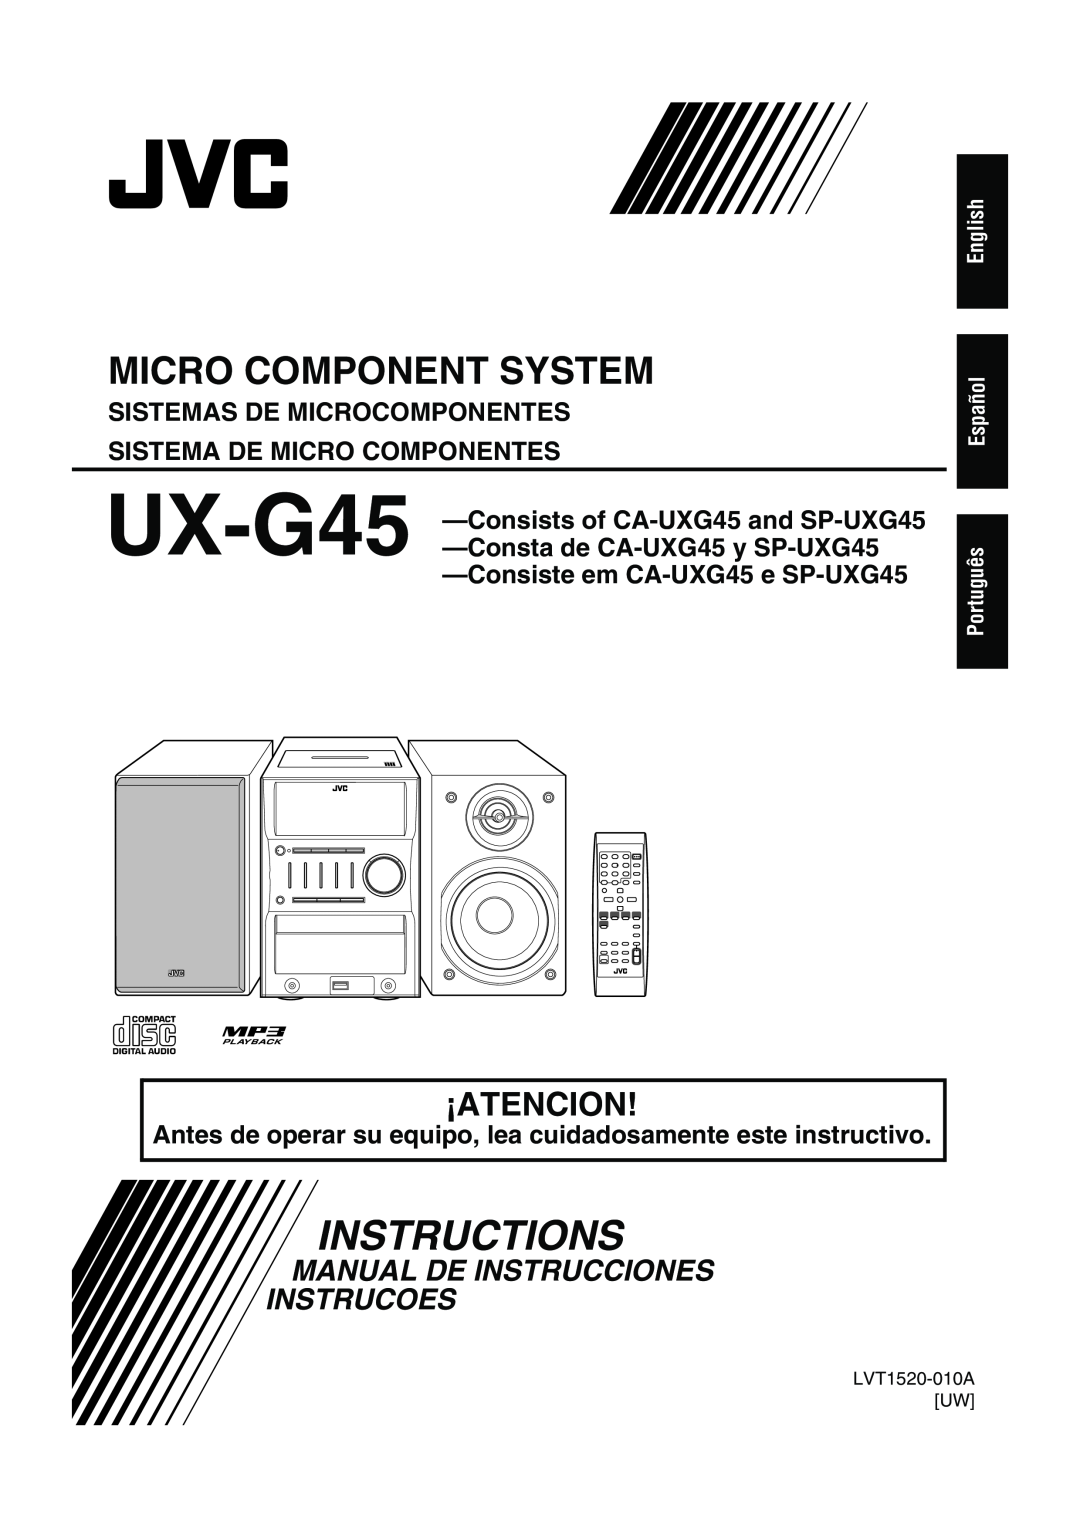 JVC LVT1520-005B Manual De Instrucciones Instrucoes, Sistemas De Microcomponentes, Sistema De Micro Componentes, ¡Atencion 